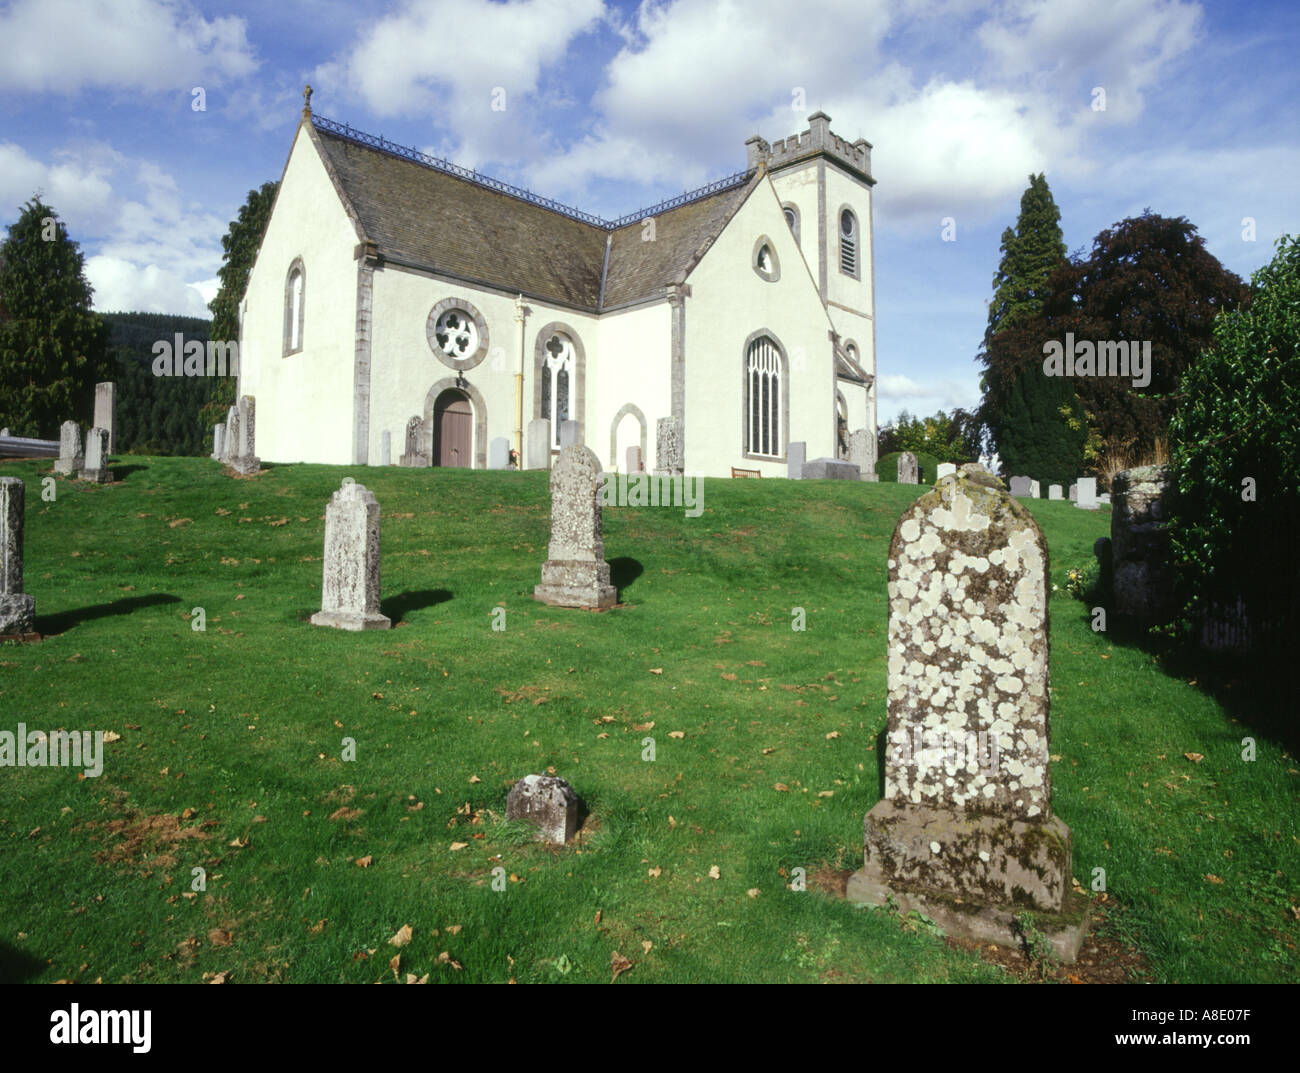 dh Friedhof Steine Gräber KENMORE PERTHSHIRE Schottische weiße Kirchen Grabsteine kirk scotland Kirche Stockfoto